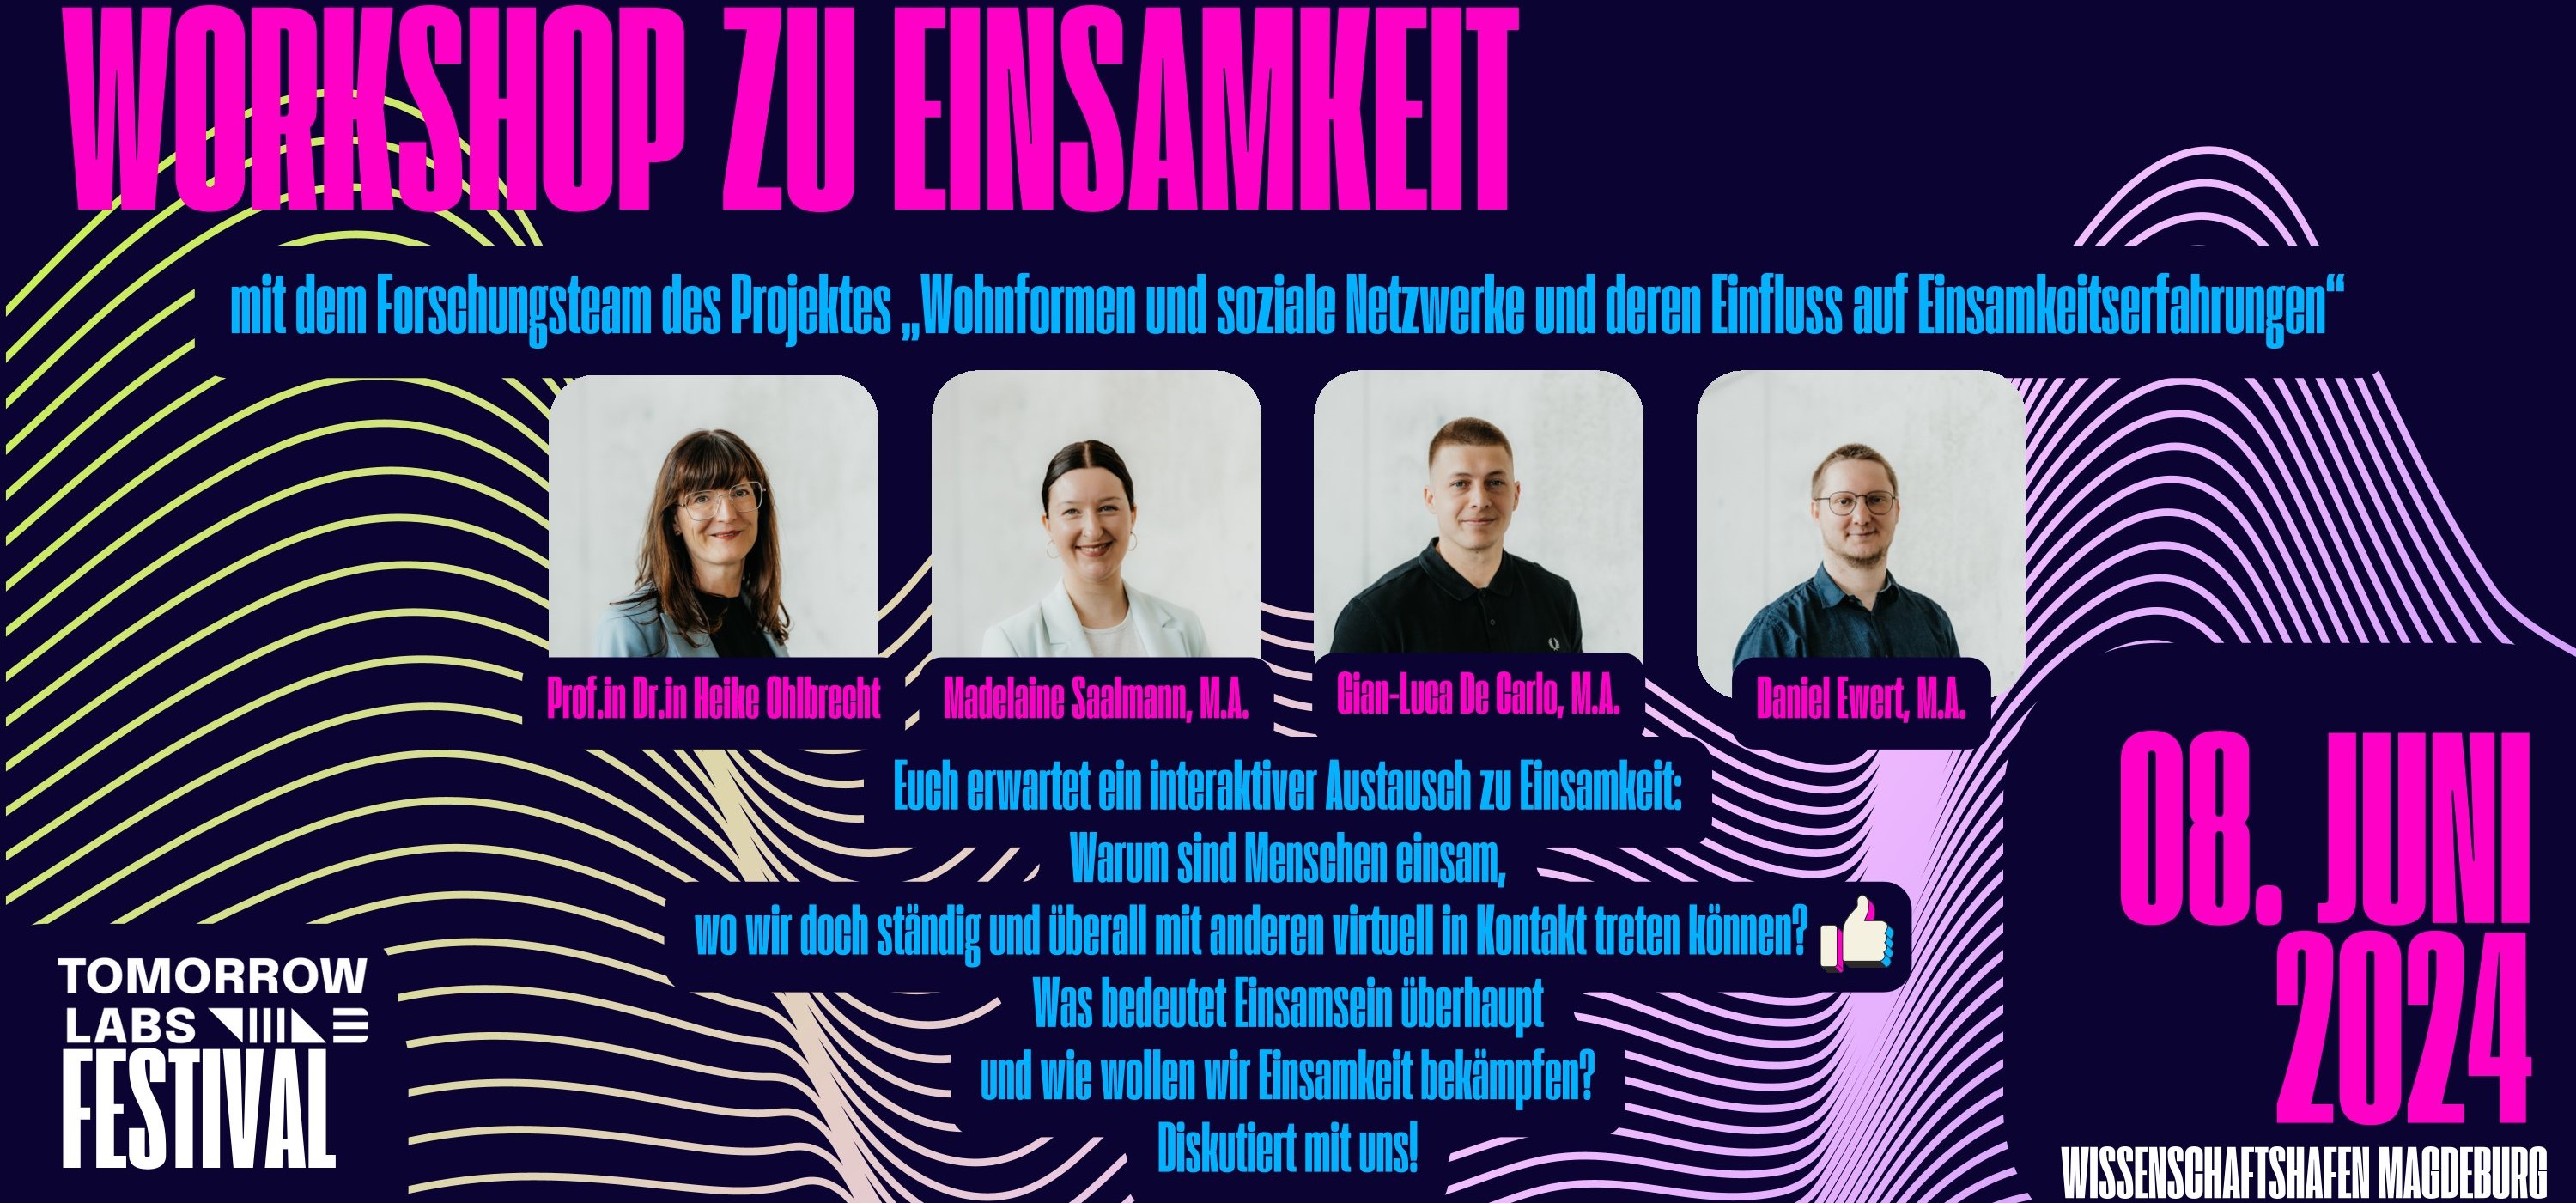 Bildschirmdatei - Tomorrow Labs Festival - Workshop zu Einsamkeit_Stand 03.06.2024-1